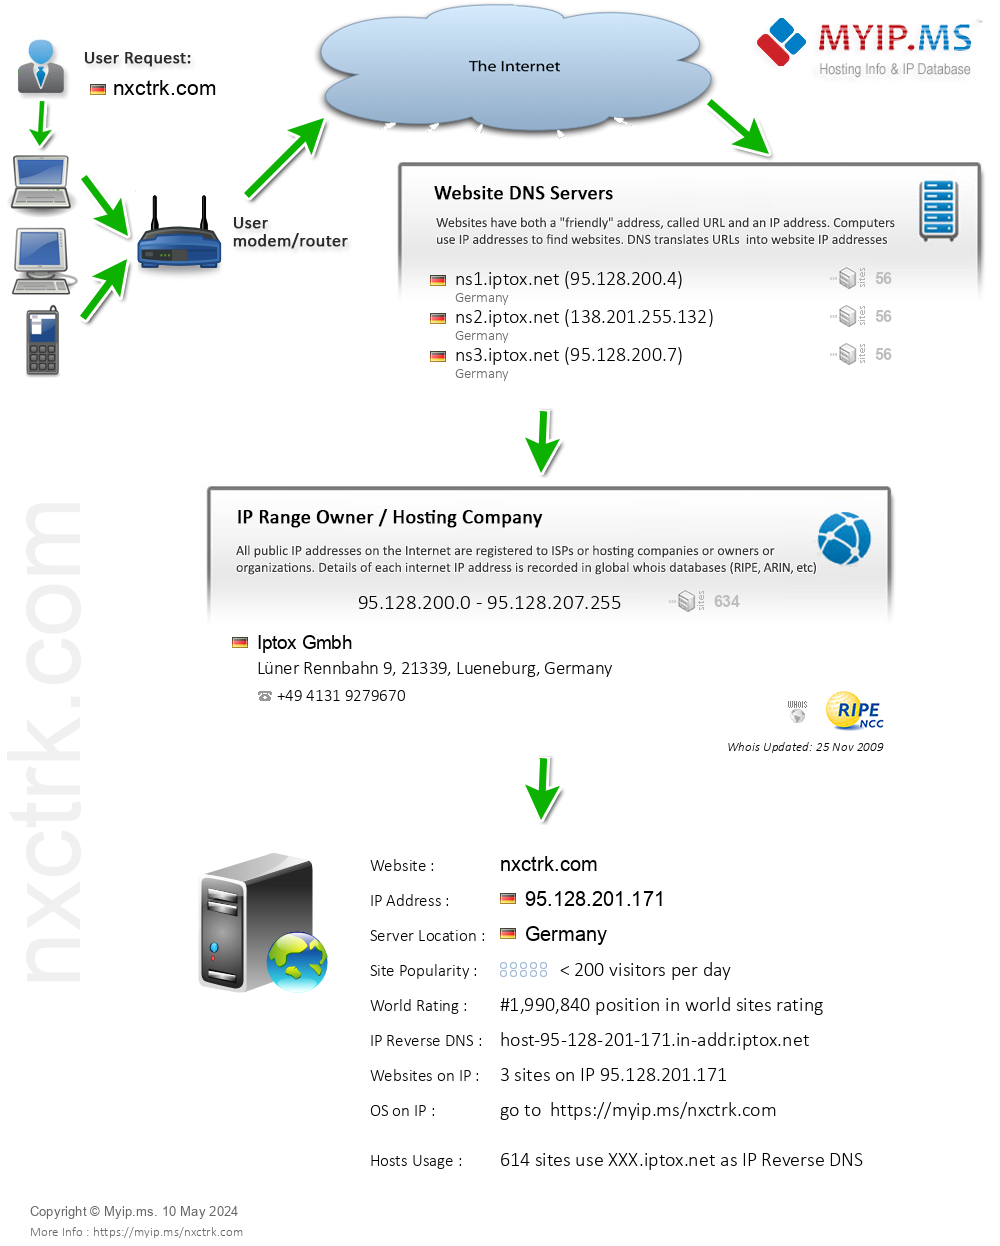 Nxctrk.com - Website Hosting Visual IP Diagram